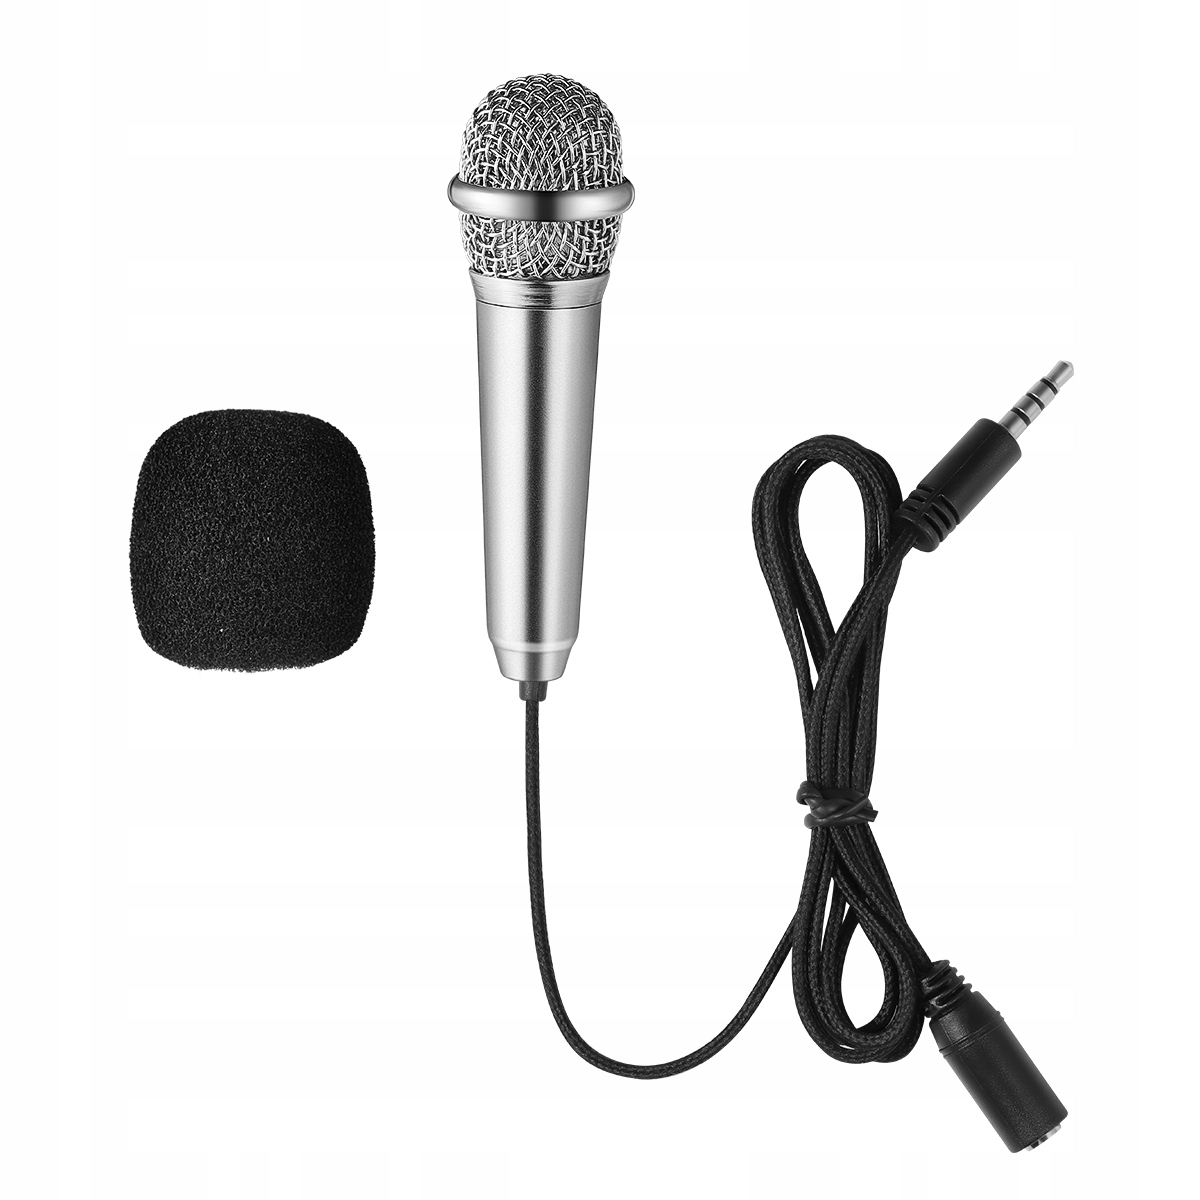 Ruční malý mikrofon Mikrofon KTV Asmr mikrofon za 129 Kč - Allegro